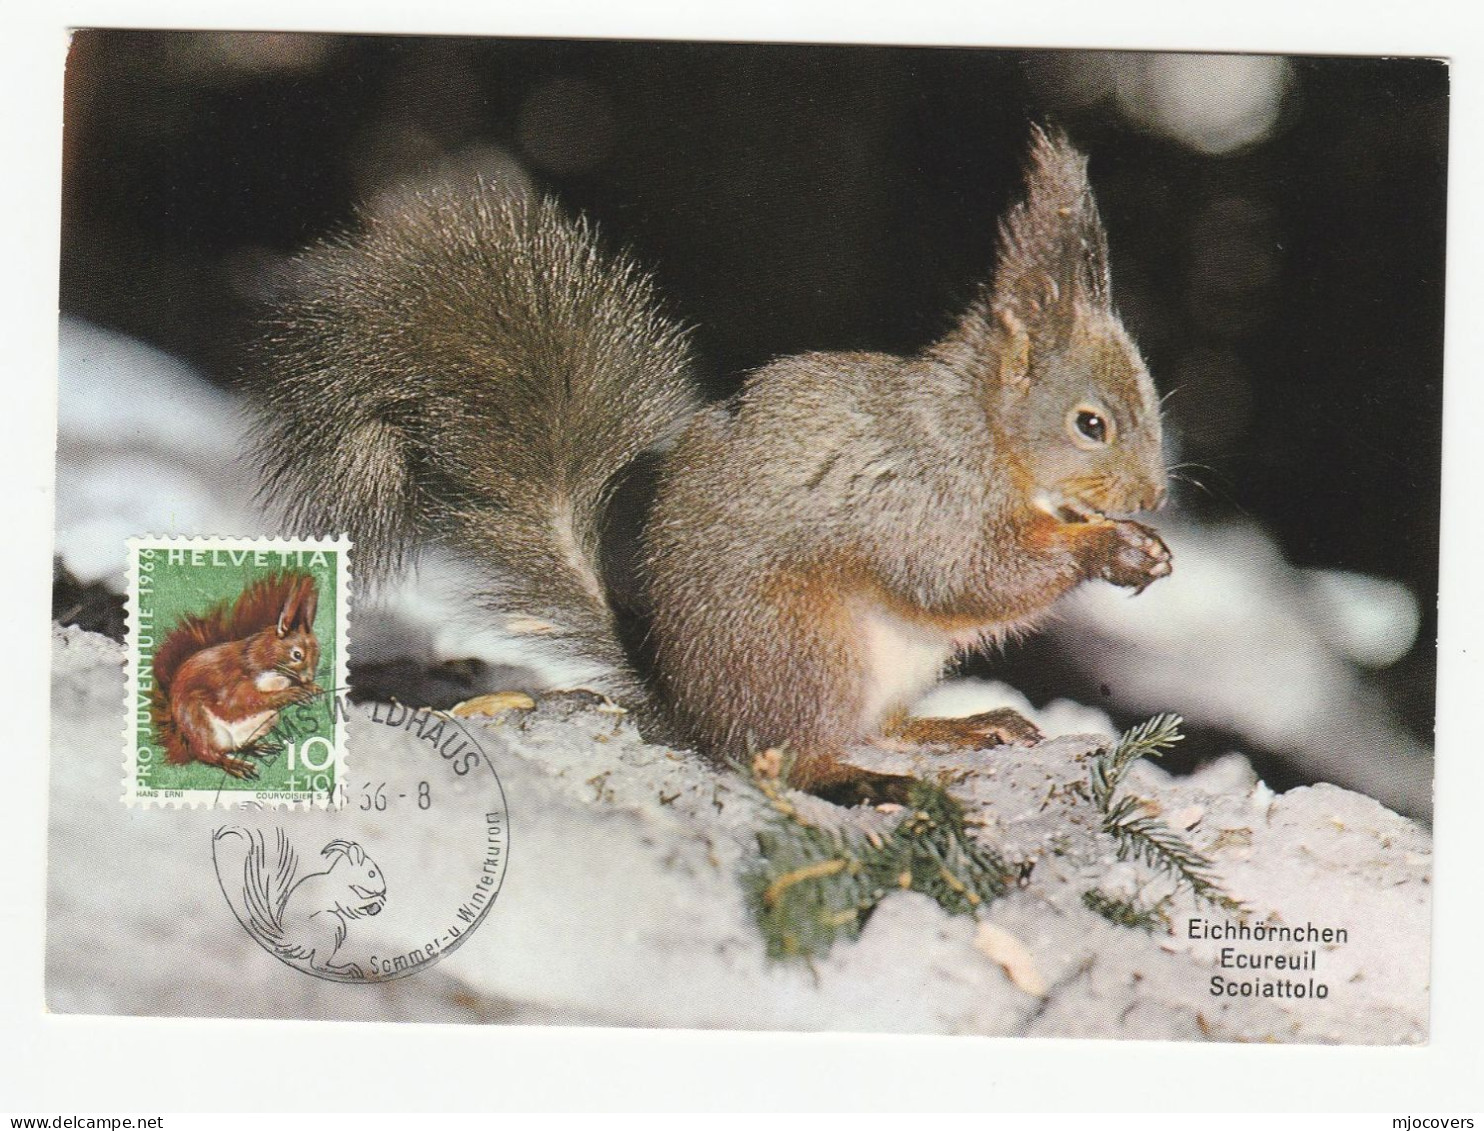 1966 SQUIRREL Maximum CARD Switzerland Stamps Fdc Cover Postcard - Cartoline Maximum